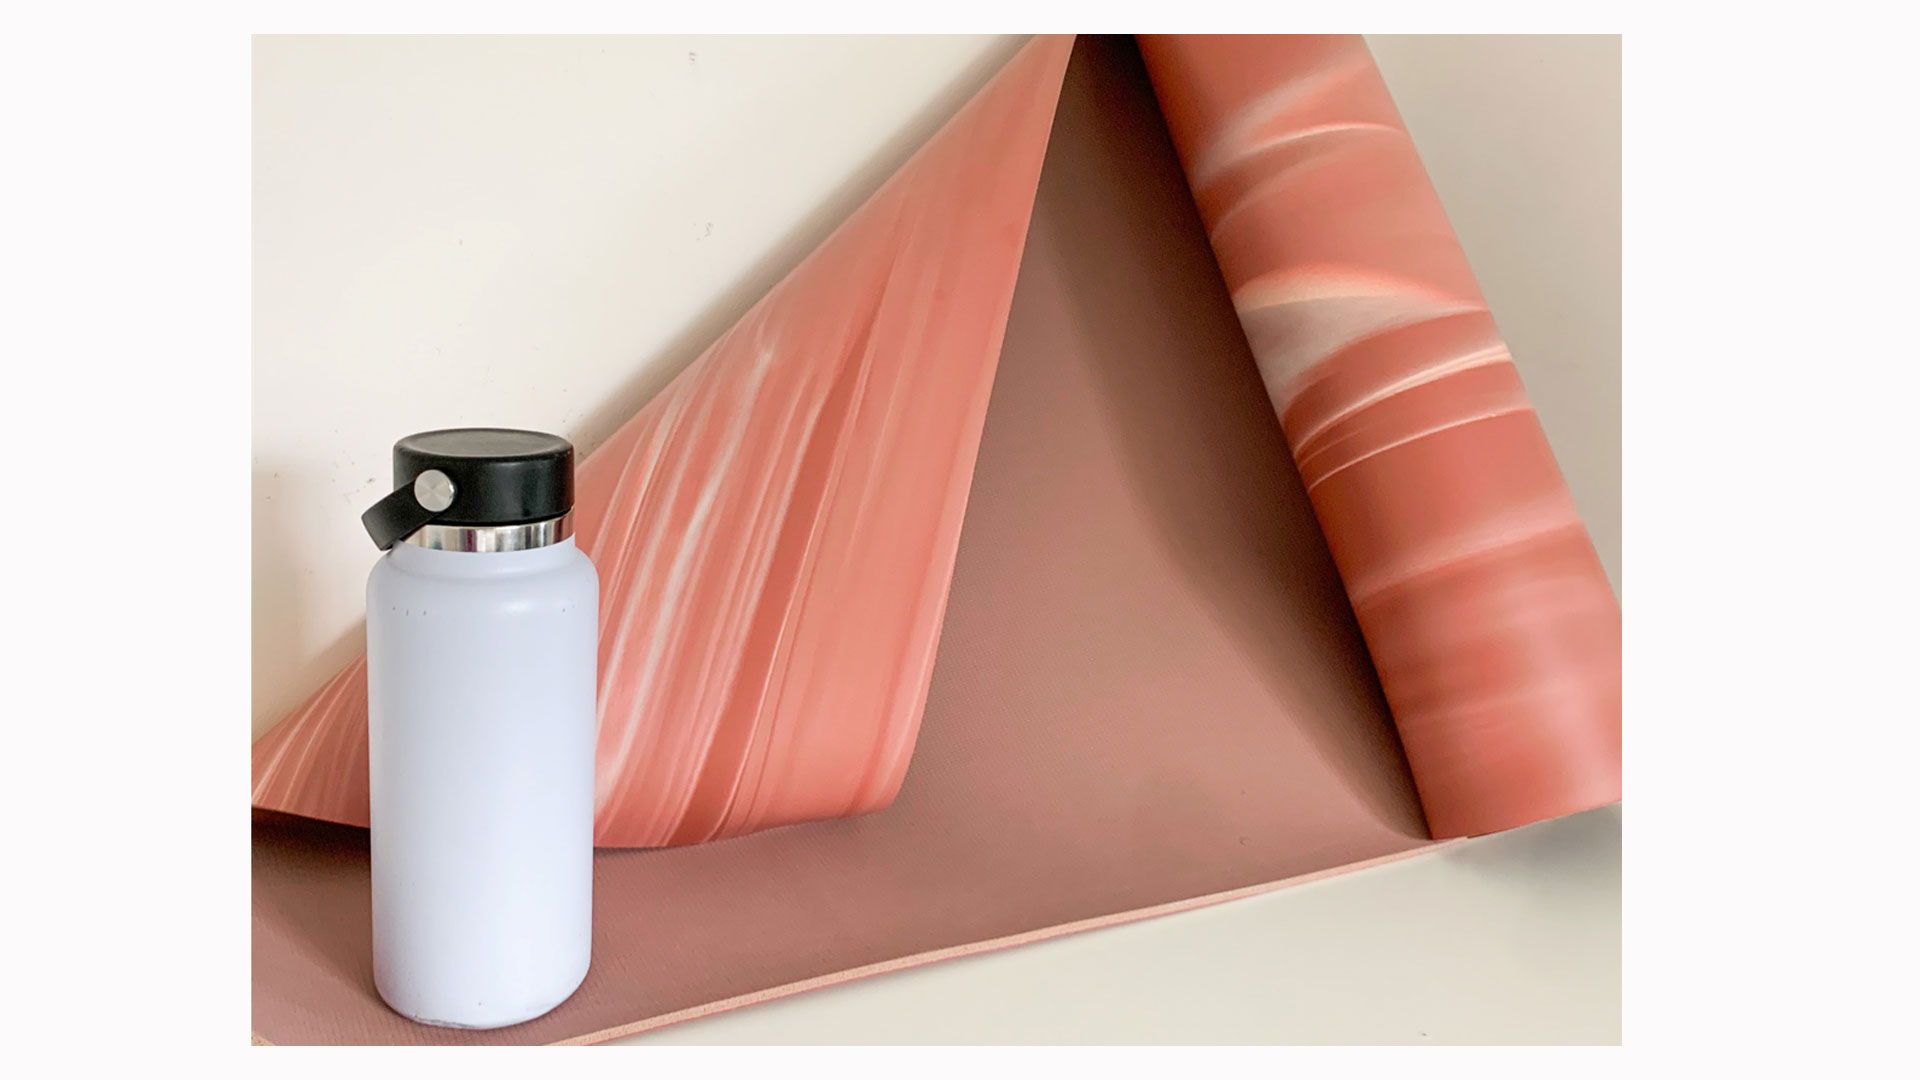 Das Bild zeigt eine halb ausgerollte rosa Lululemon Wende-5-mm-Yogamatte neben einer weißen Wasserflasche aus Metall.